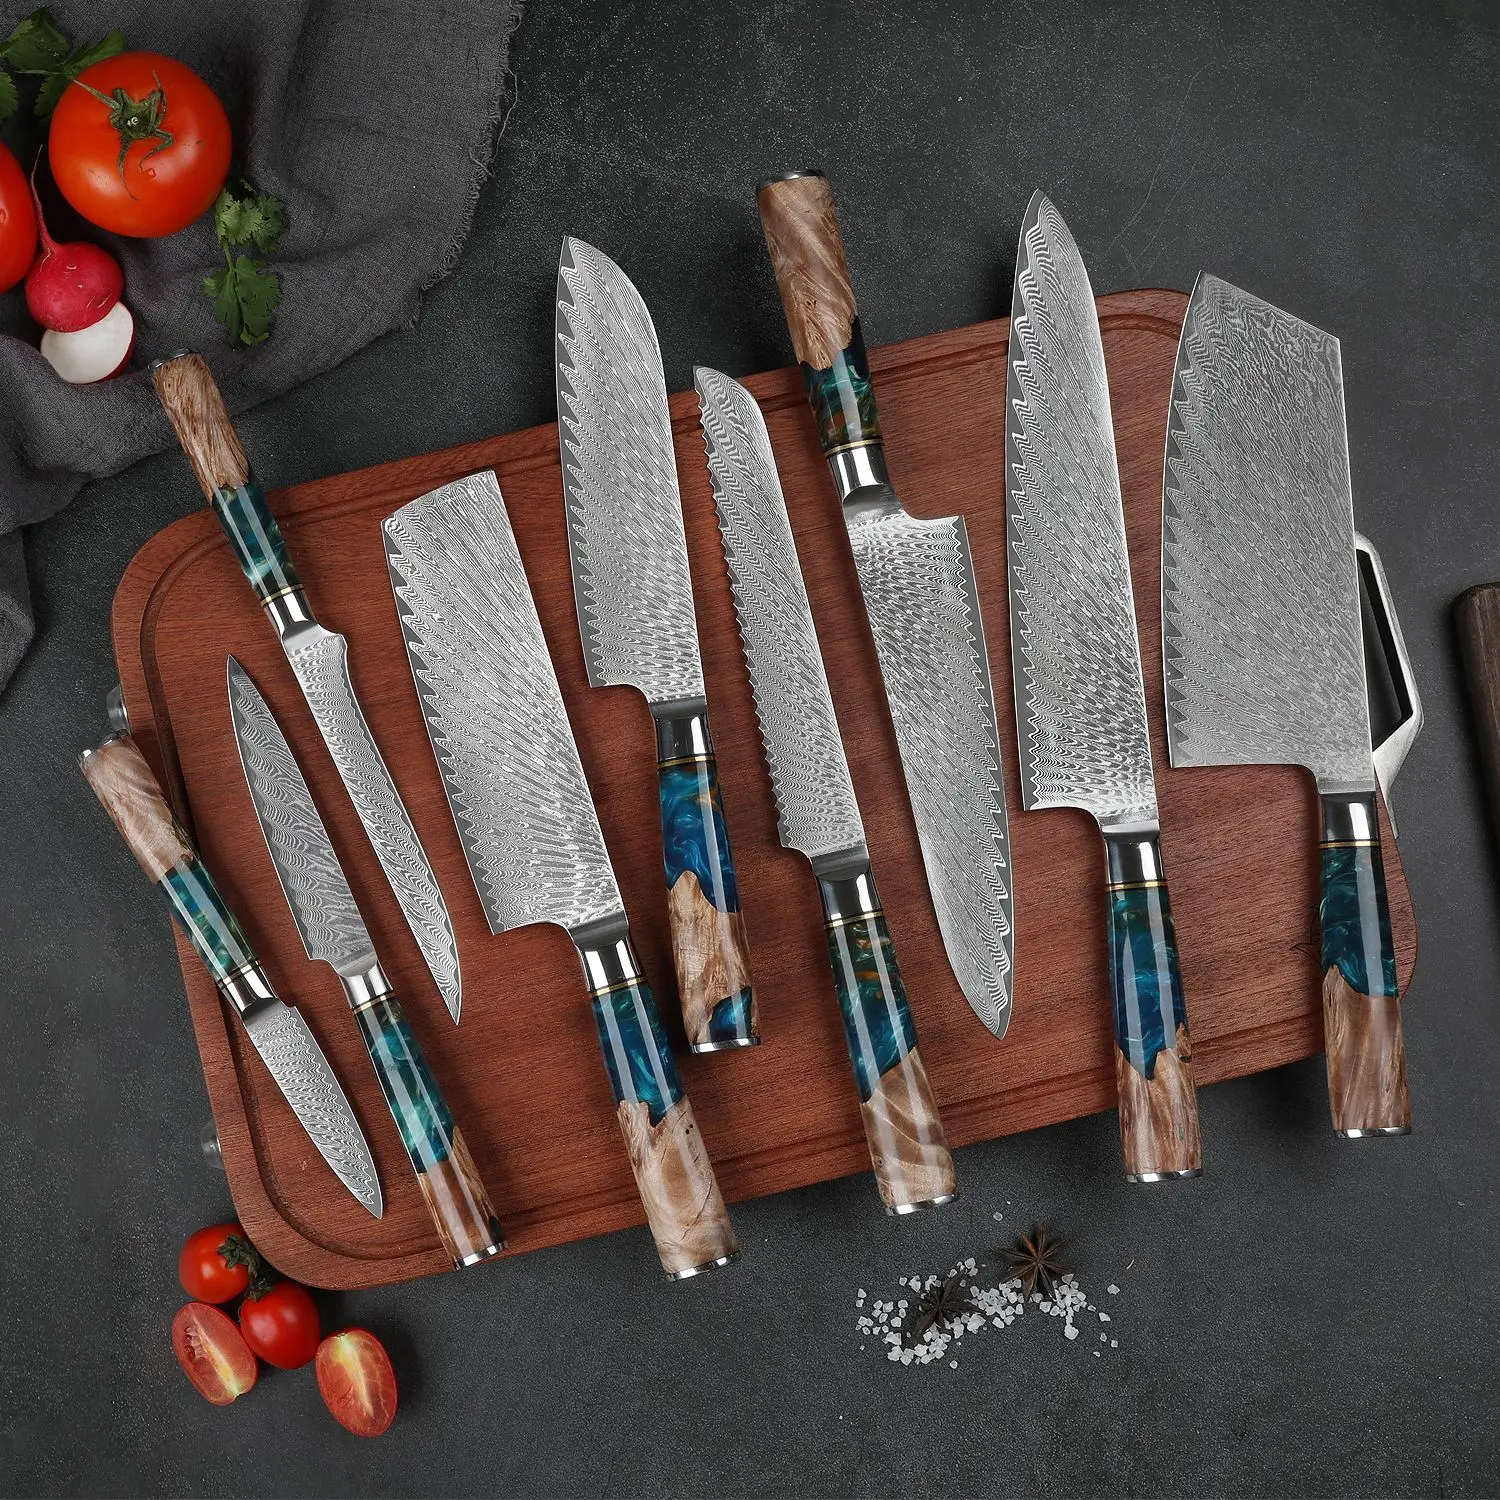 

Набор кухонных ножей VG10 из дамасской стали, шеф-повар, мясницкий нож для чистки хлеба, резец с синей смолой и цветной деревянной ручкой, 1-7 шт. в комплекте